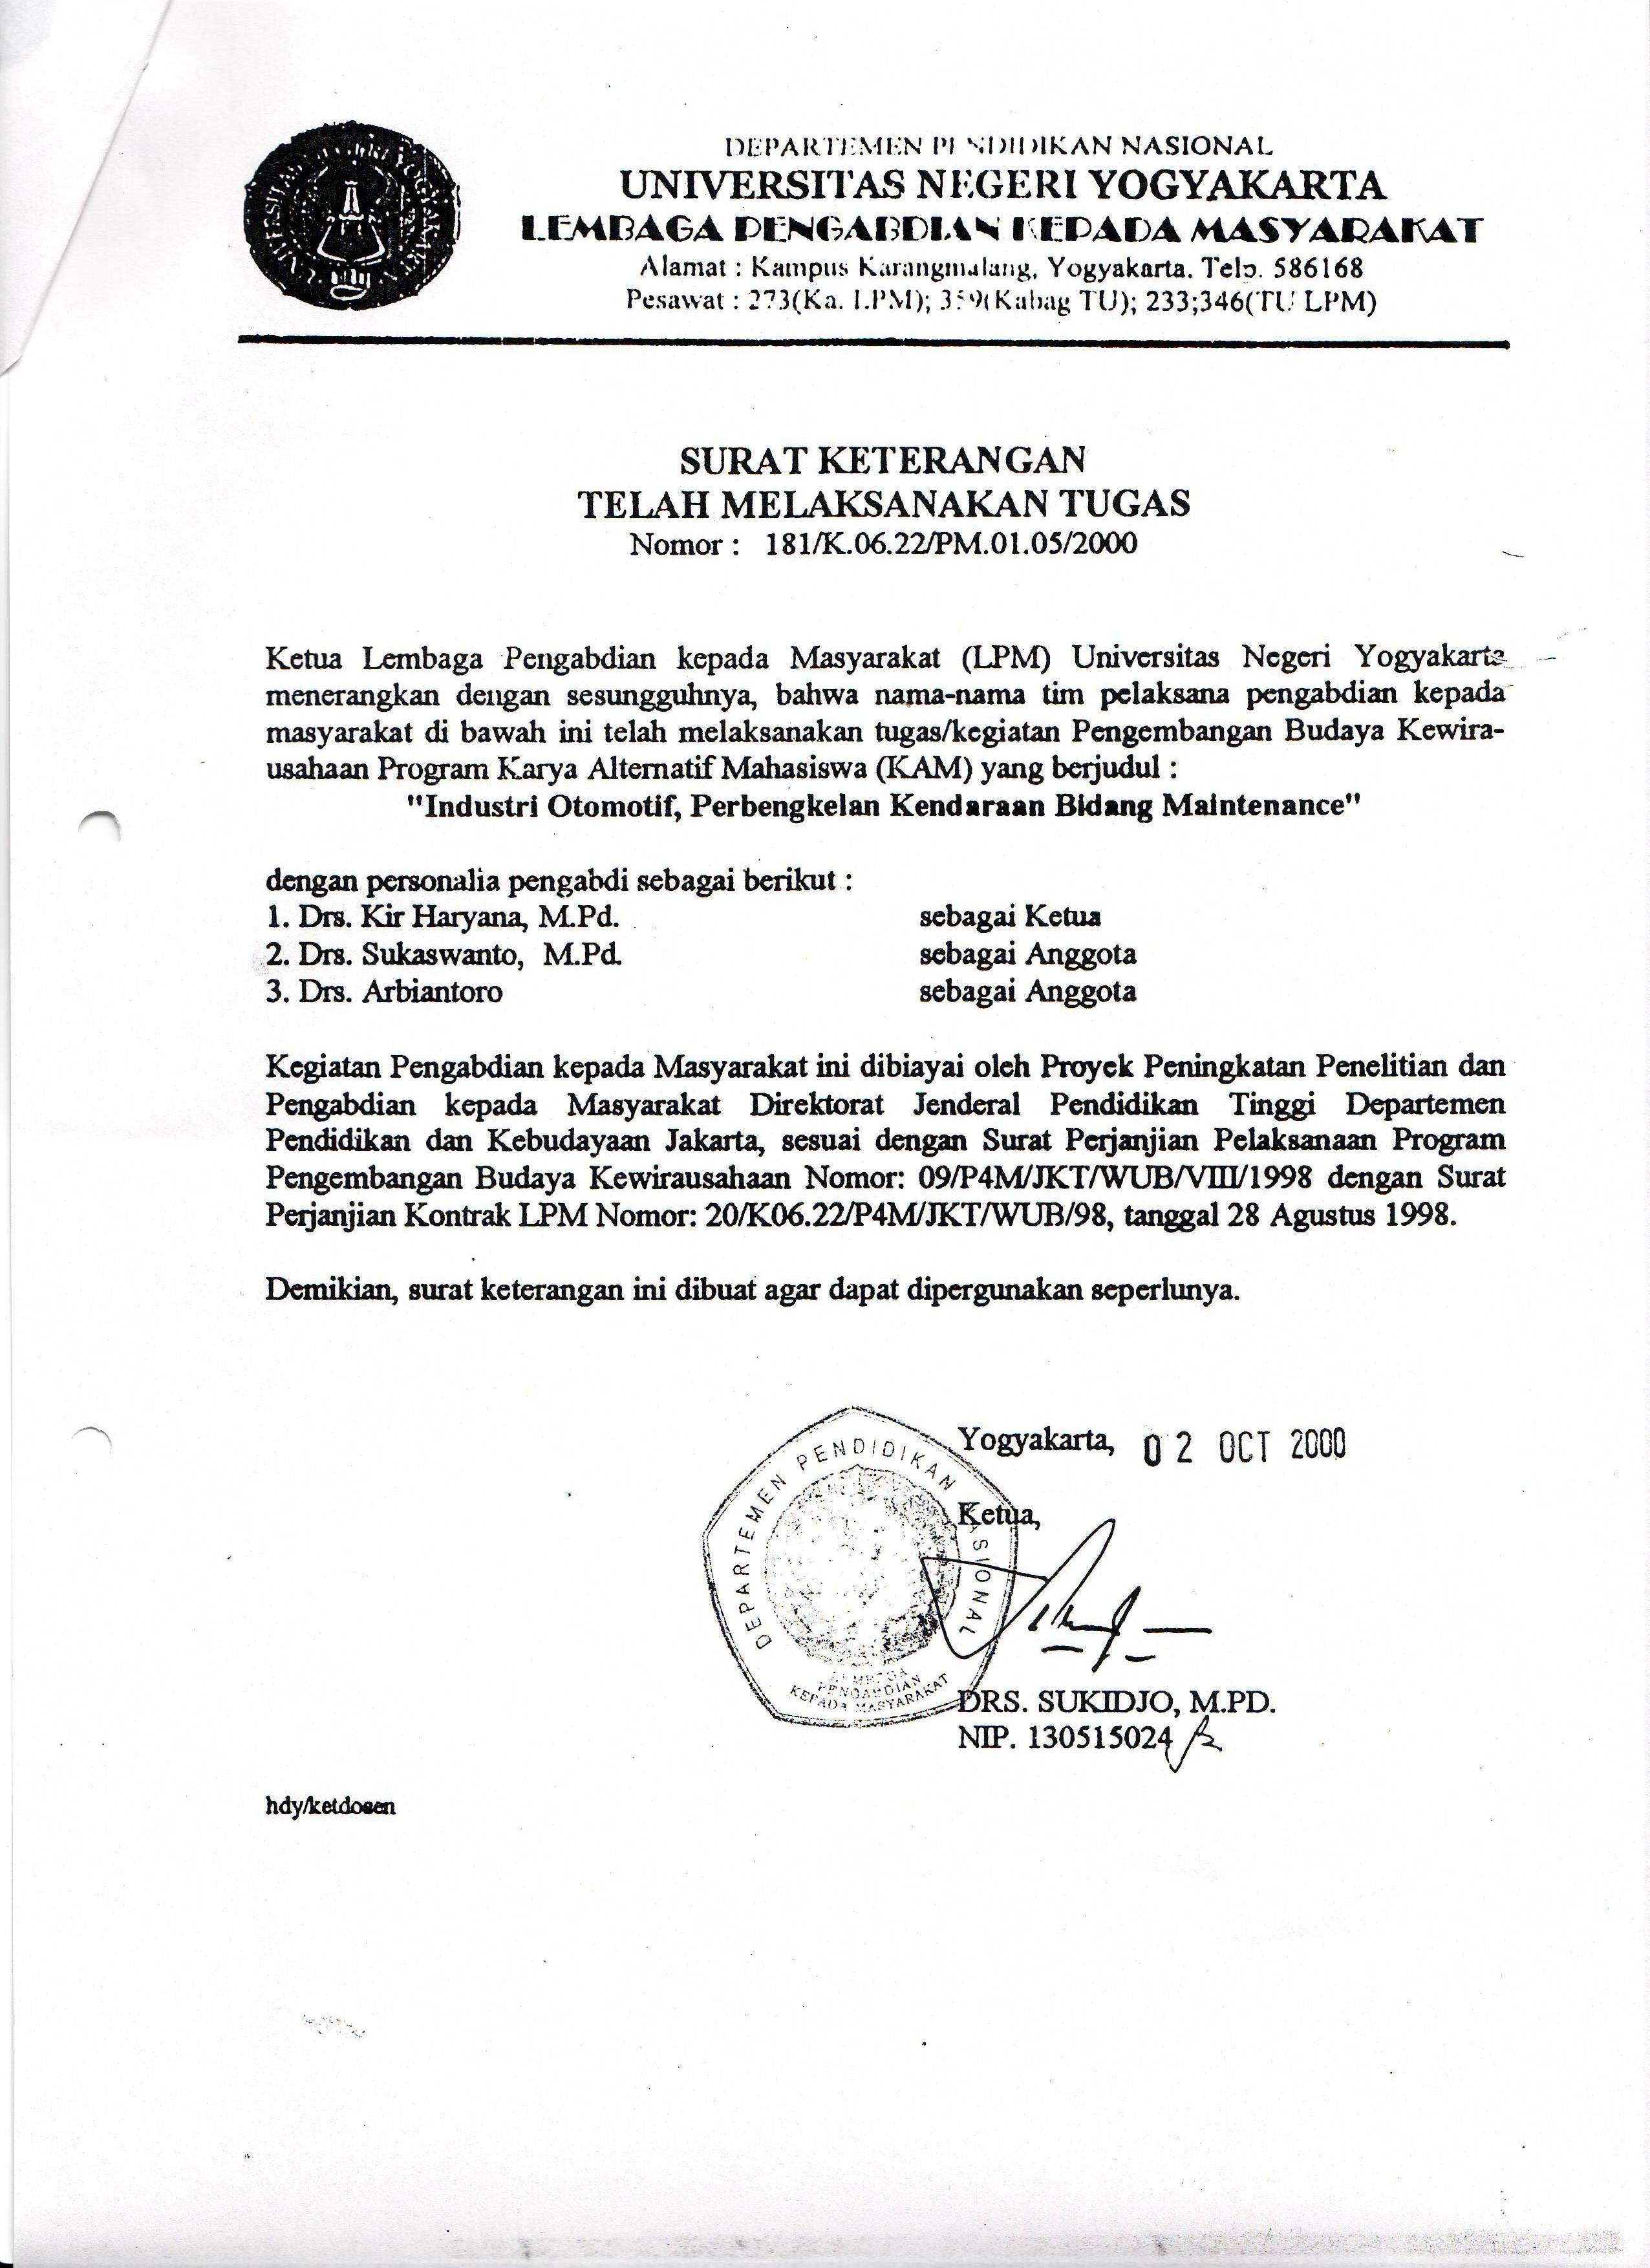 Staff Site Universitas Negeri Yogyakarta Drs Sukaswanto Mpd